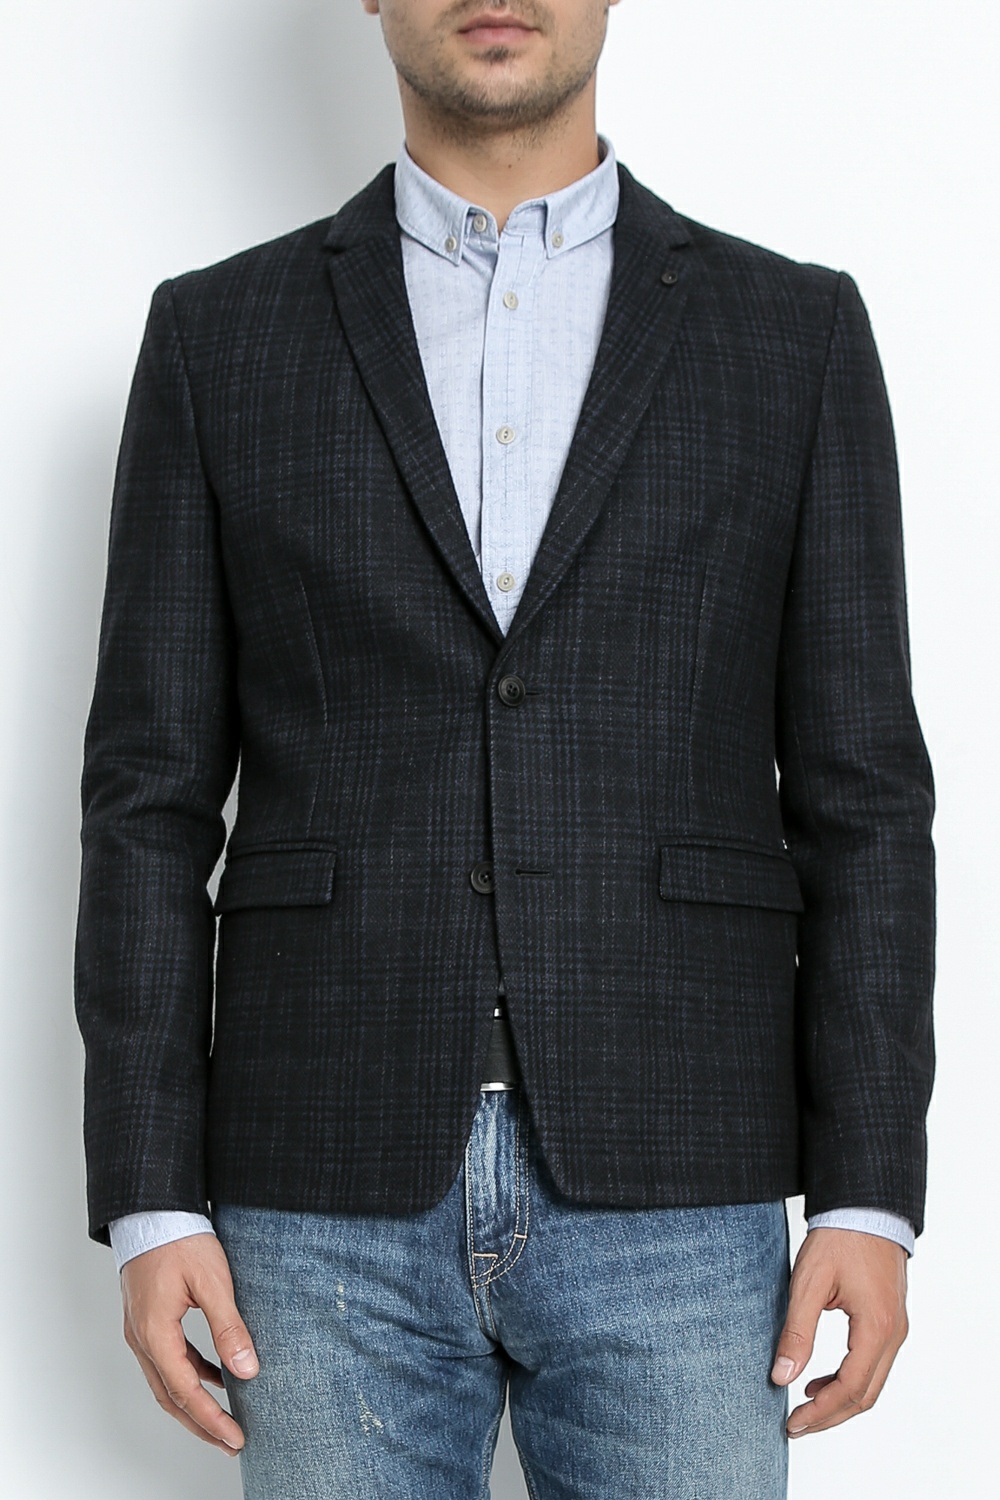 Ανδρικά/Ρούχα/Πανωφόρια/Σακάκια BOSS - Ανδρικό σακάκι BOSS Baxon μπλε με καρό μοτίβο